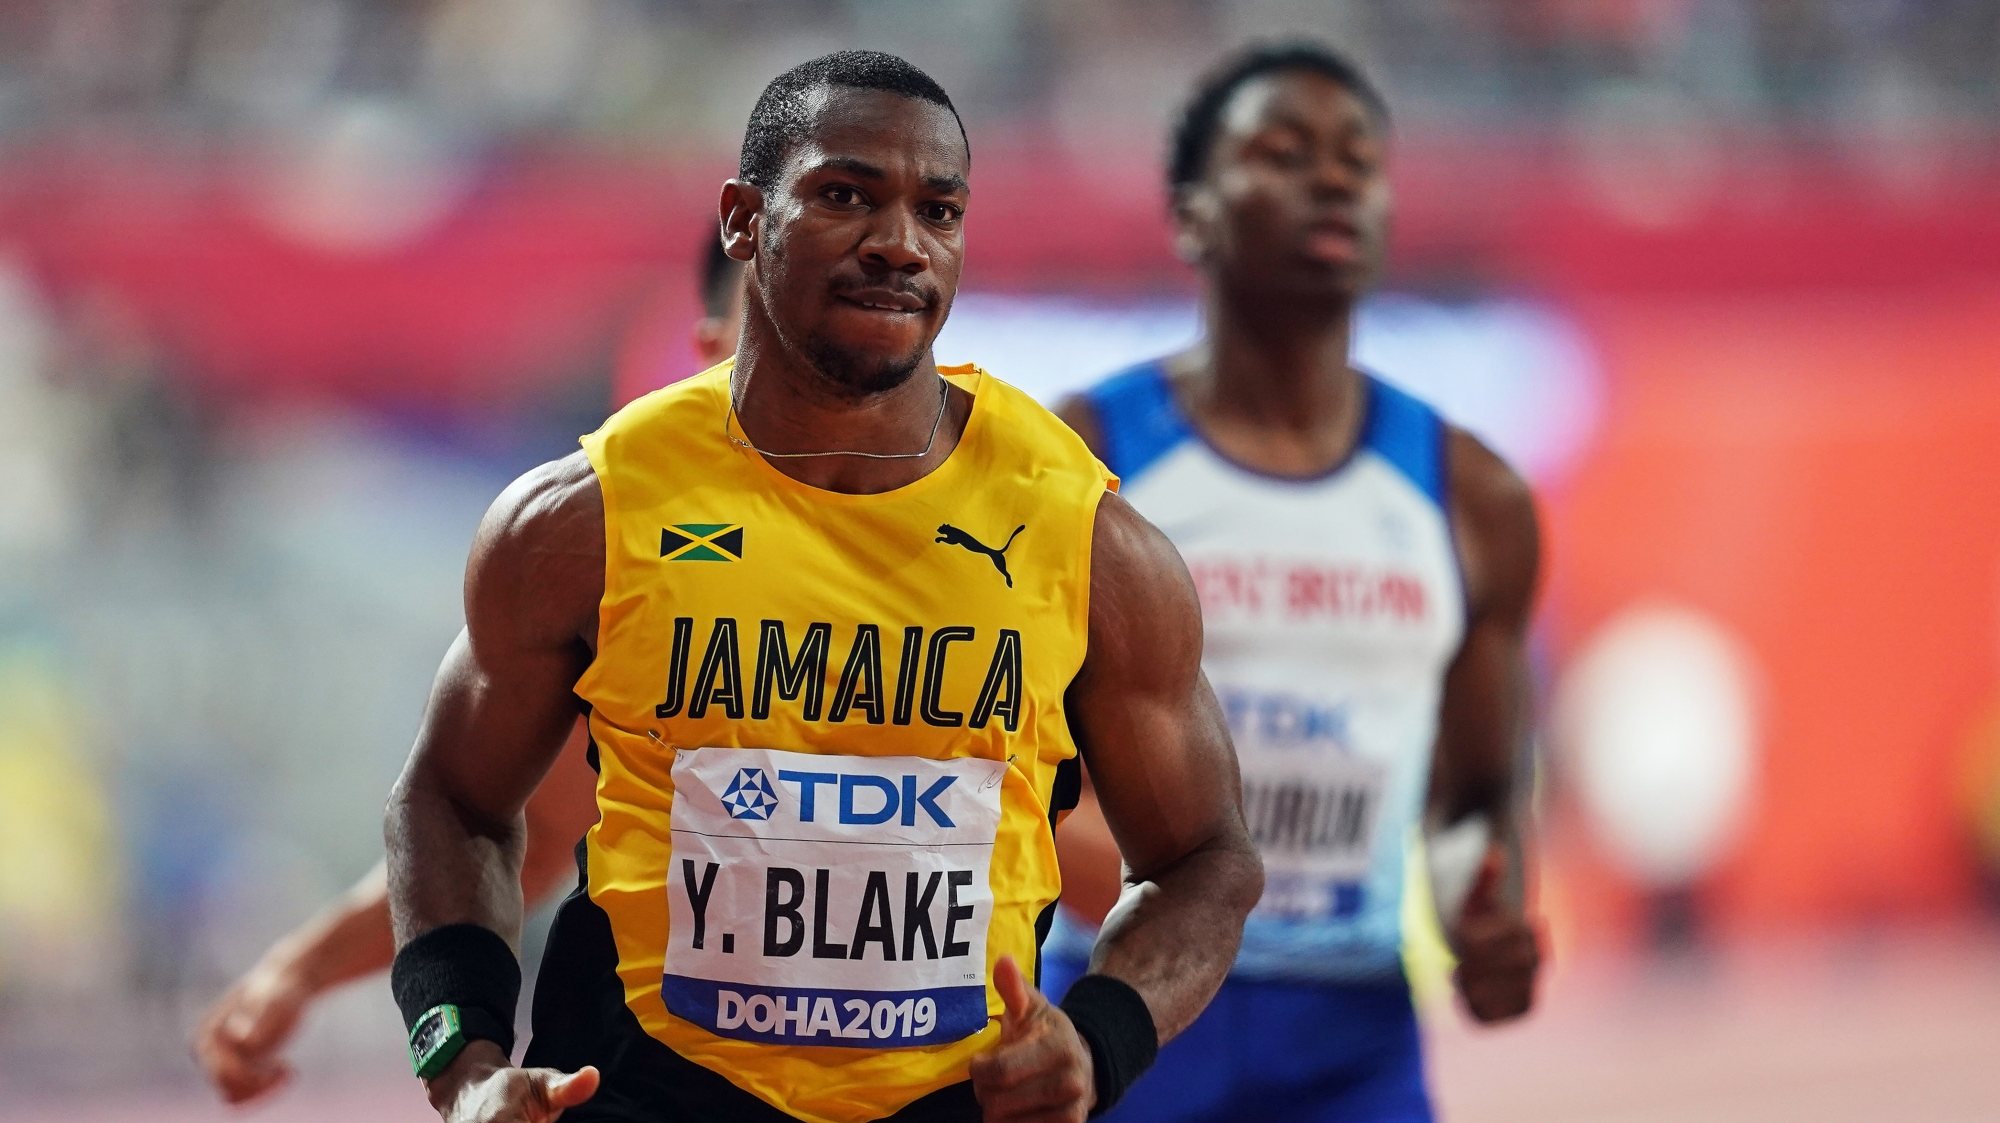 Yohan Blake, agora com 31 anos, terminou final dos 100 metros do último Mundial na quinta posição e foi uma das principais desilusões da prova